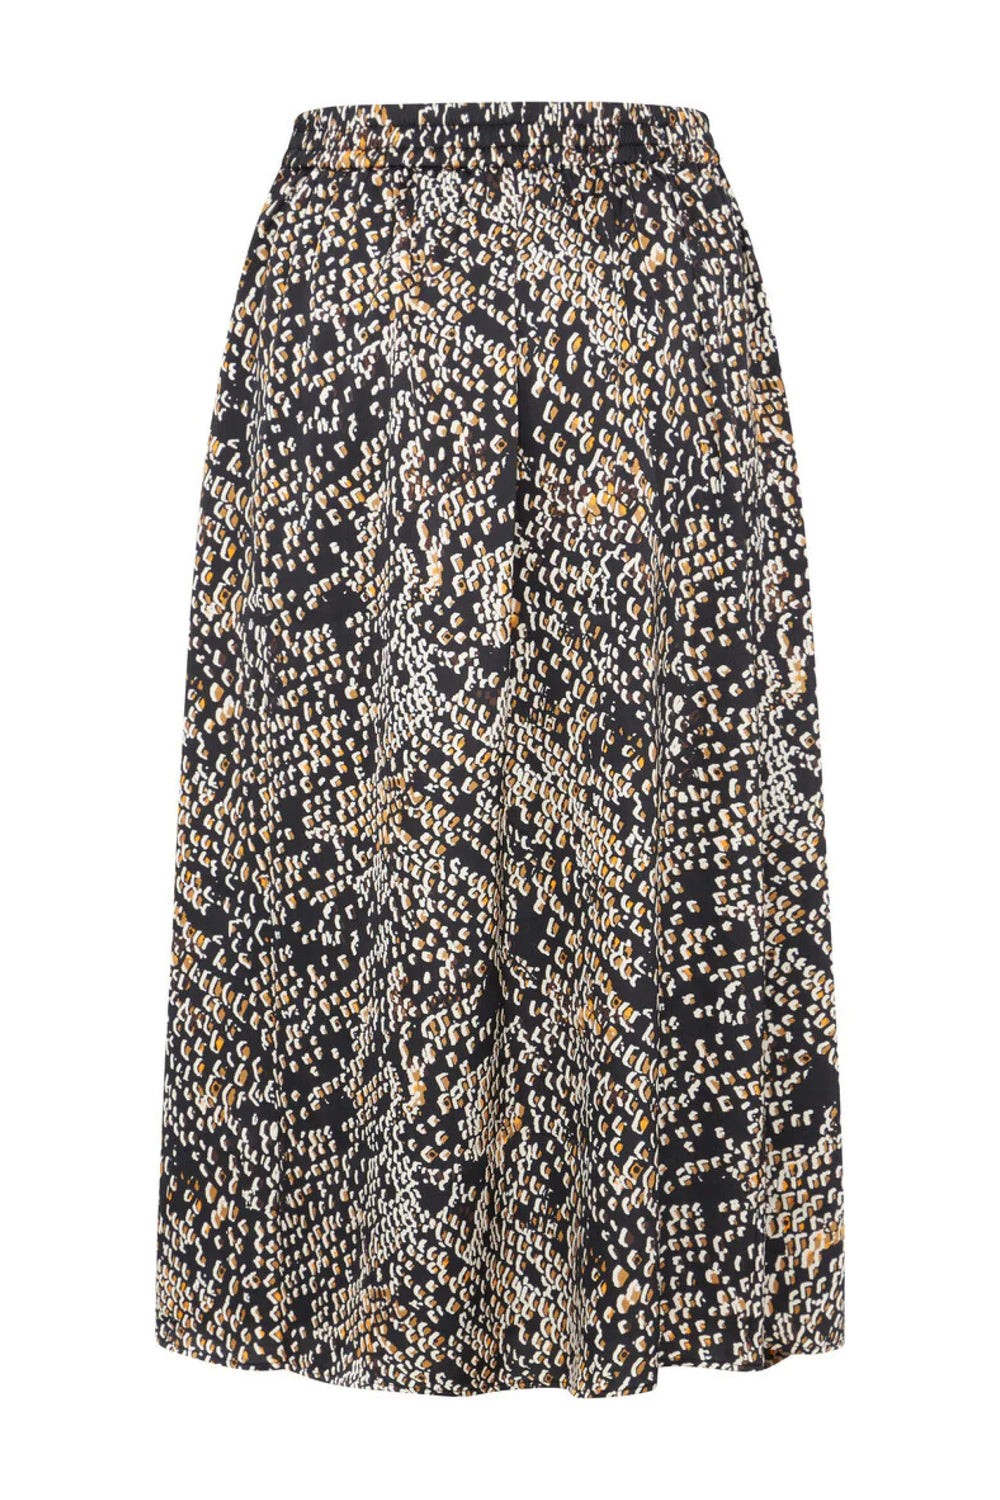 Bruuns Bazaar Women AcaciaBBAmattas skirt Skirt Black dot print